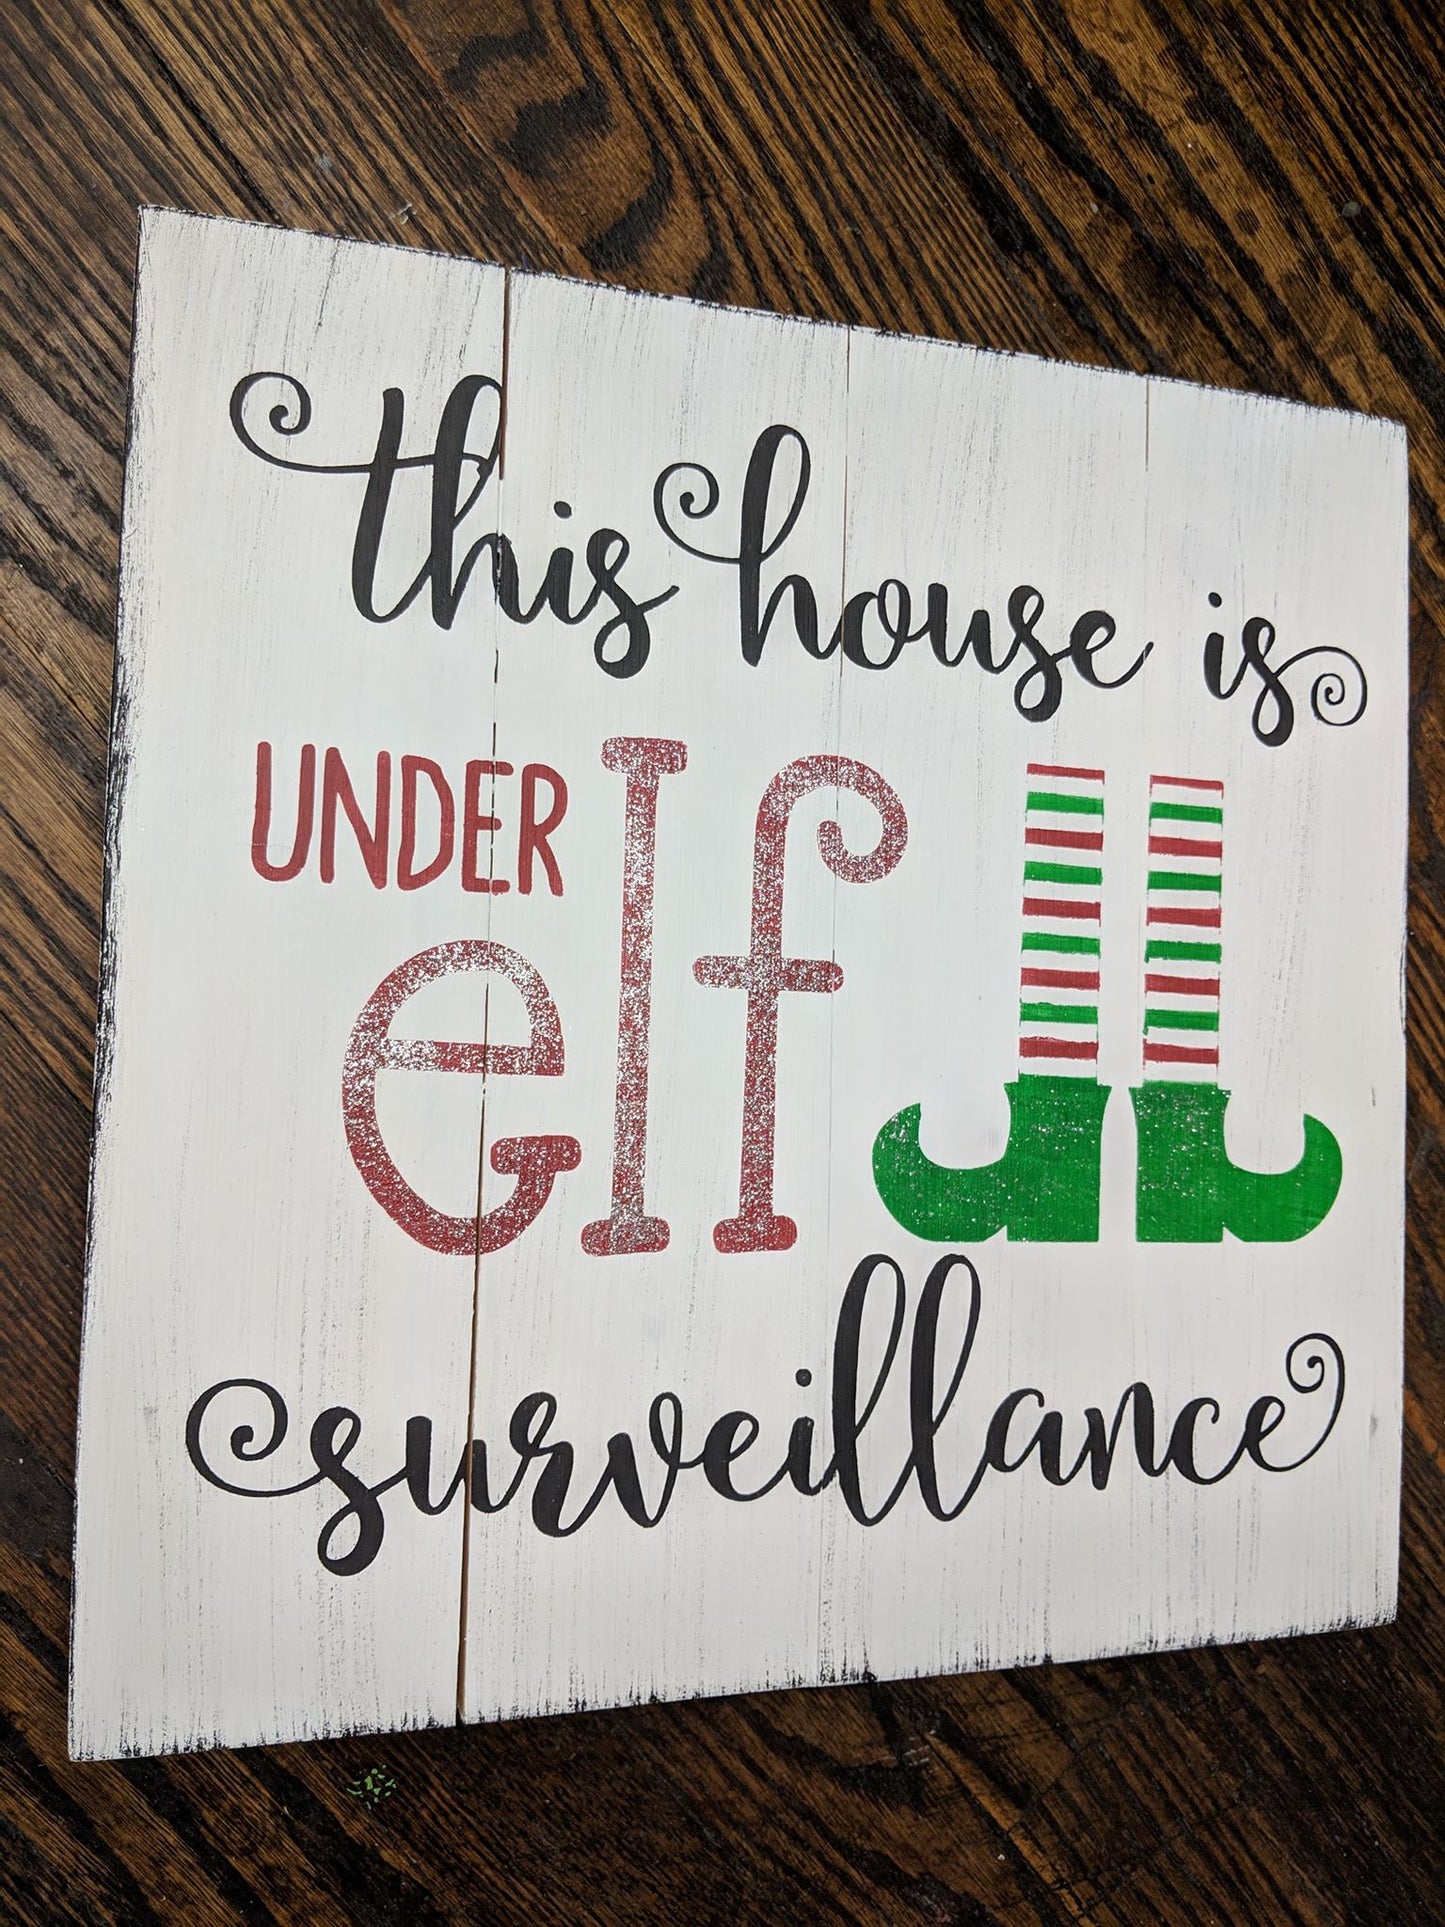 This house is under elf surveillance